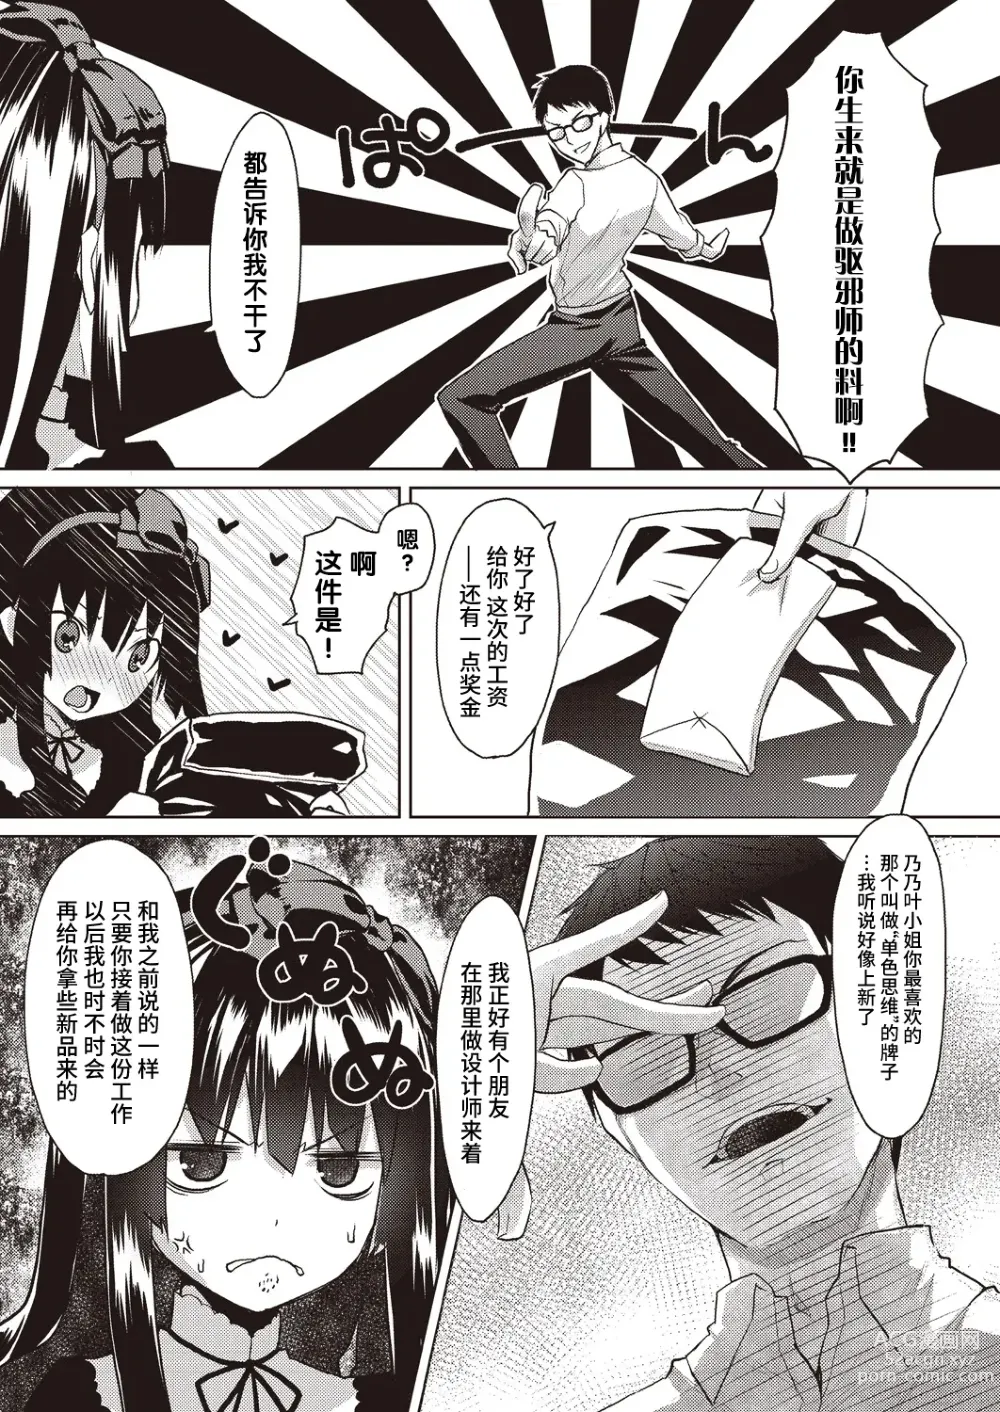 Page 7 of manga Kareobana Kitan Ch.1